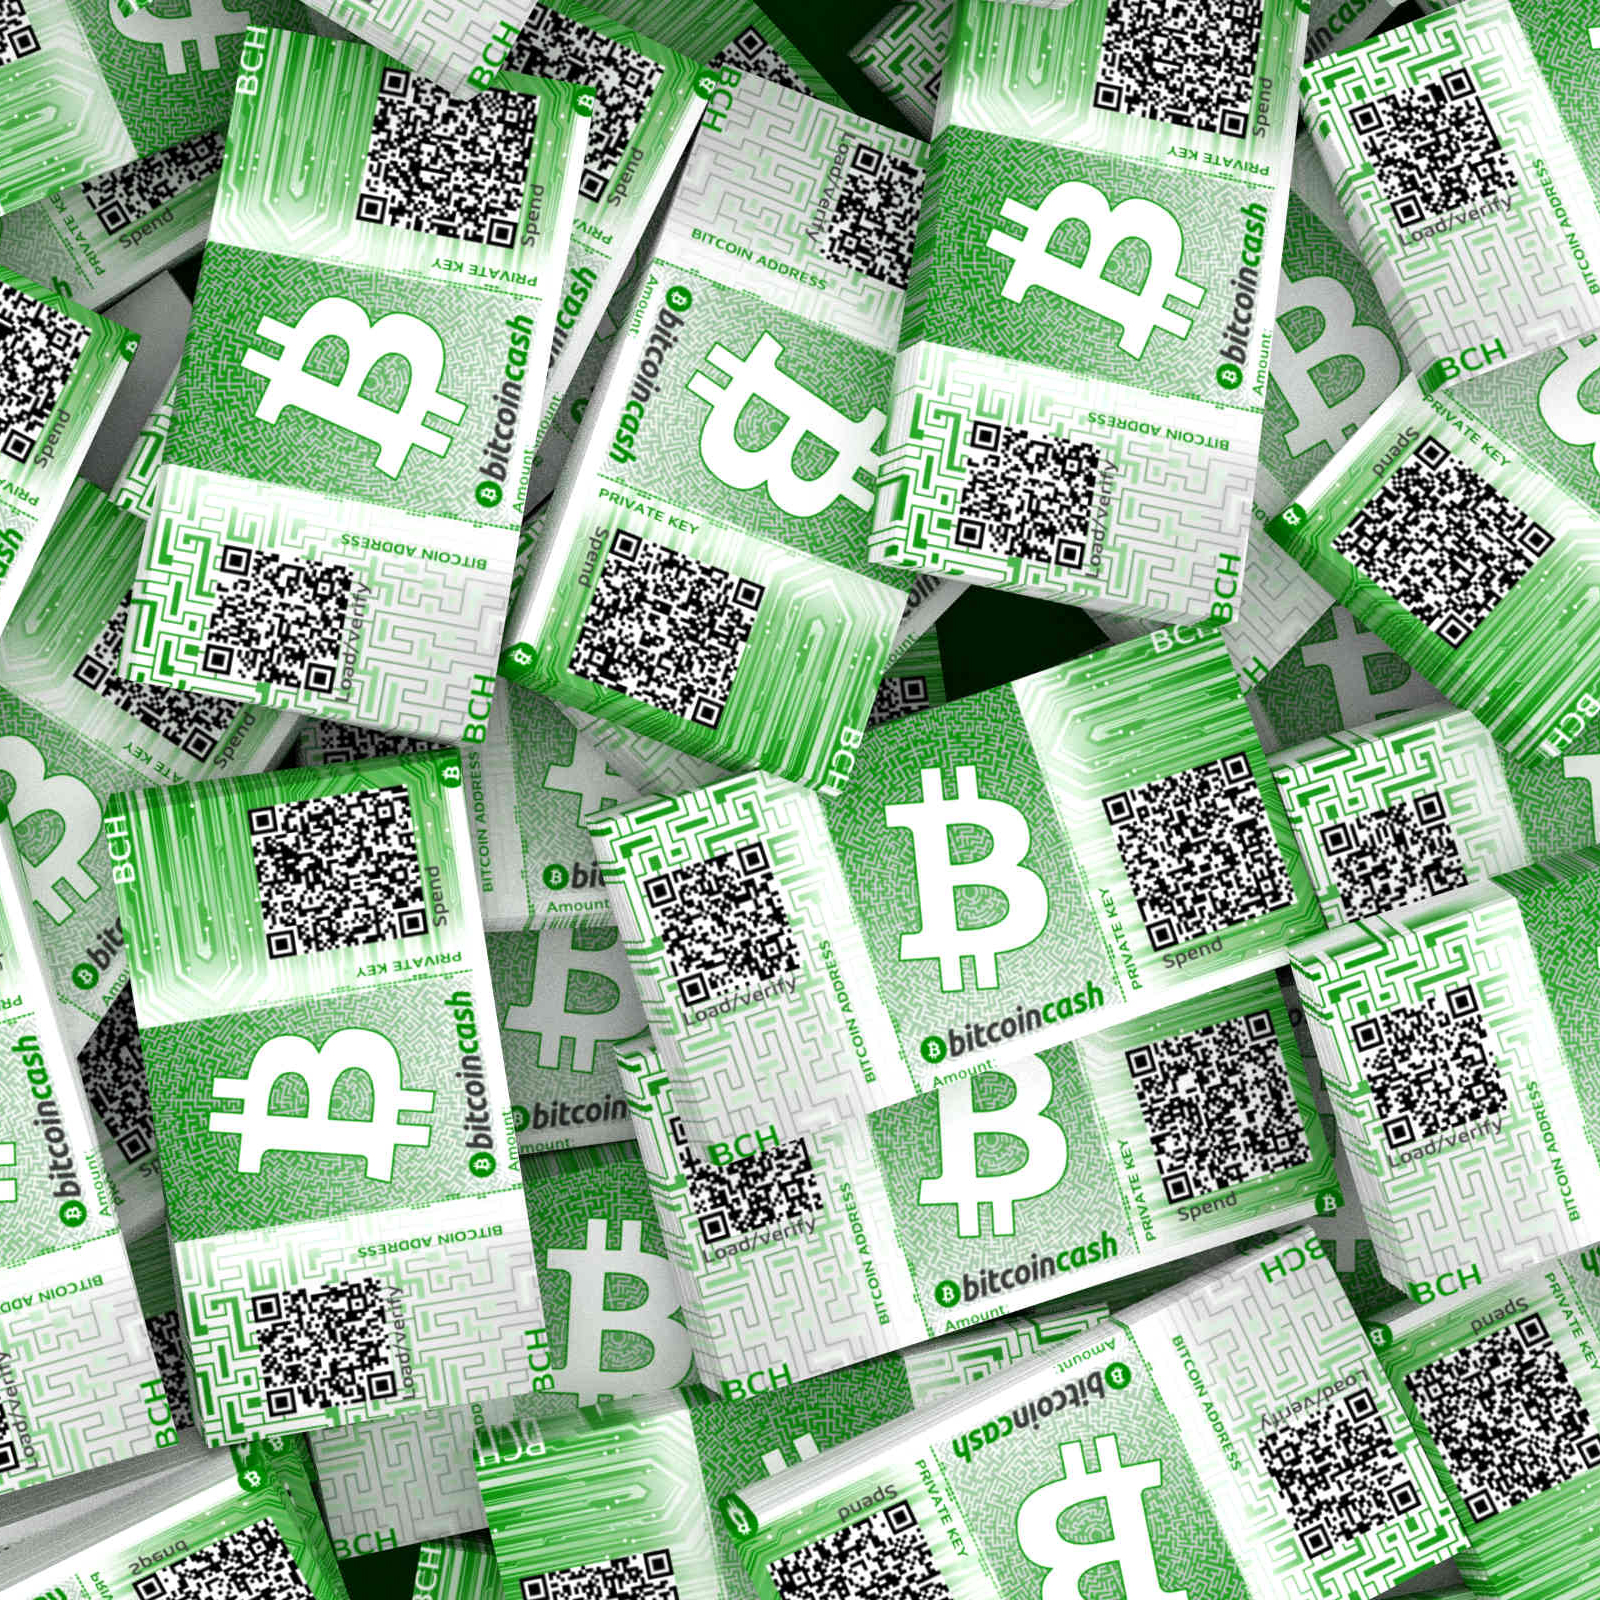 Bitcoin cash news